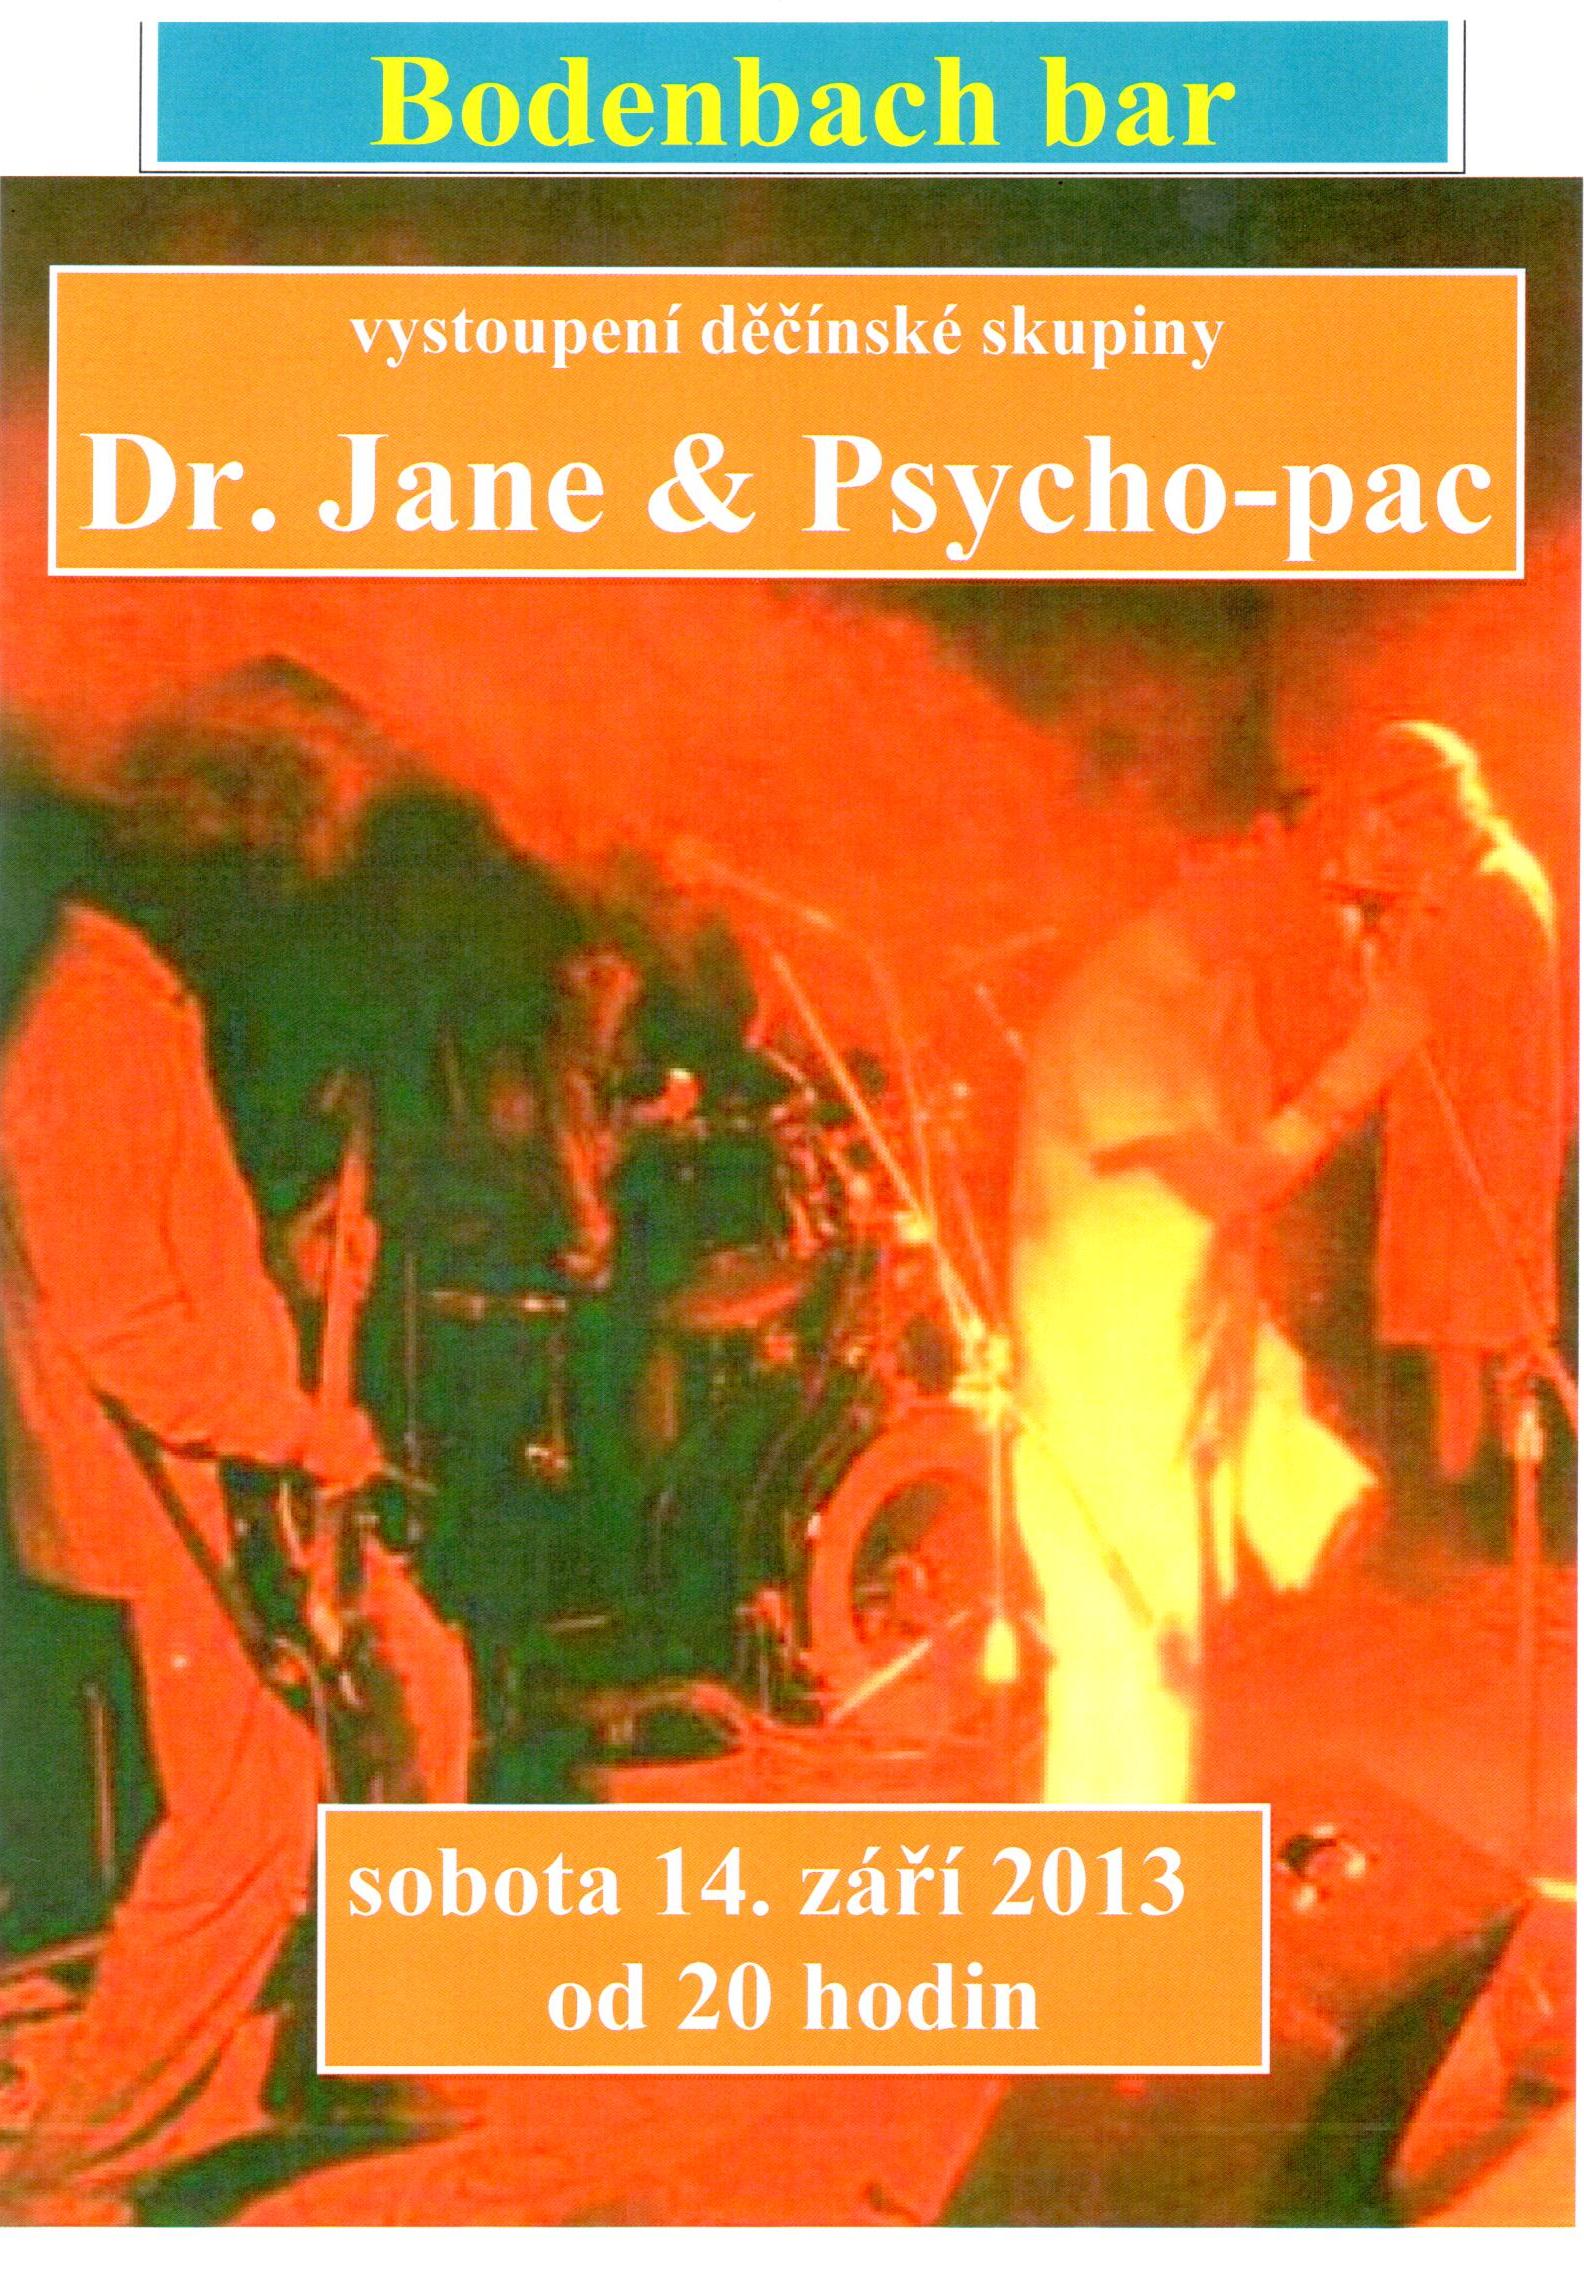 Plakát_Dr.Jane-Psycho-pac_Bodenbach